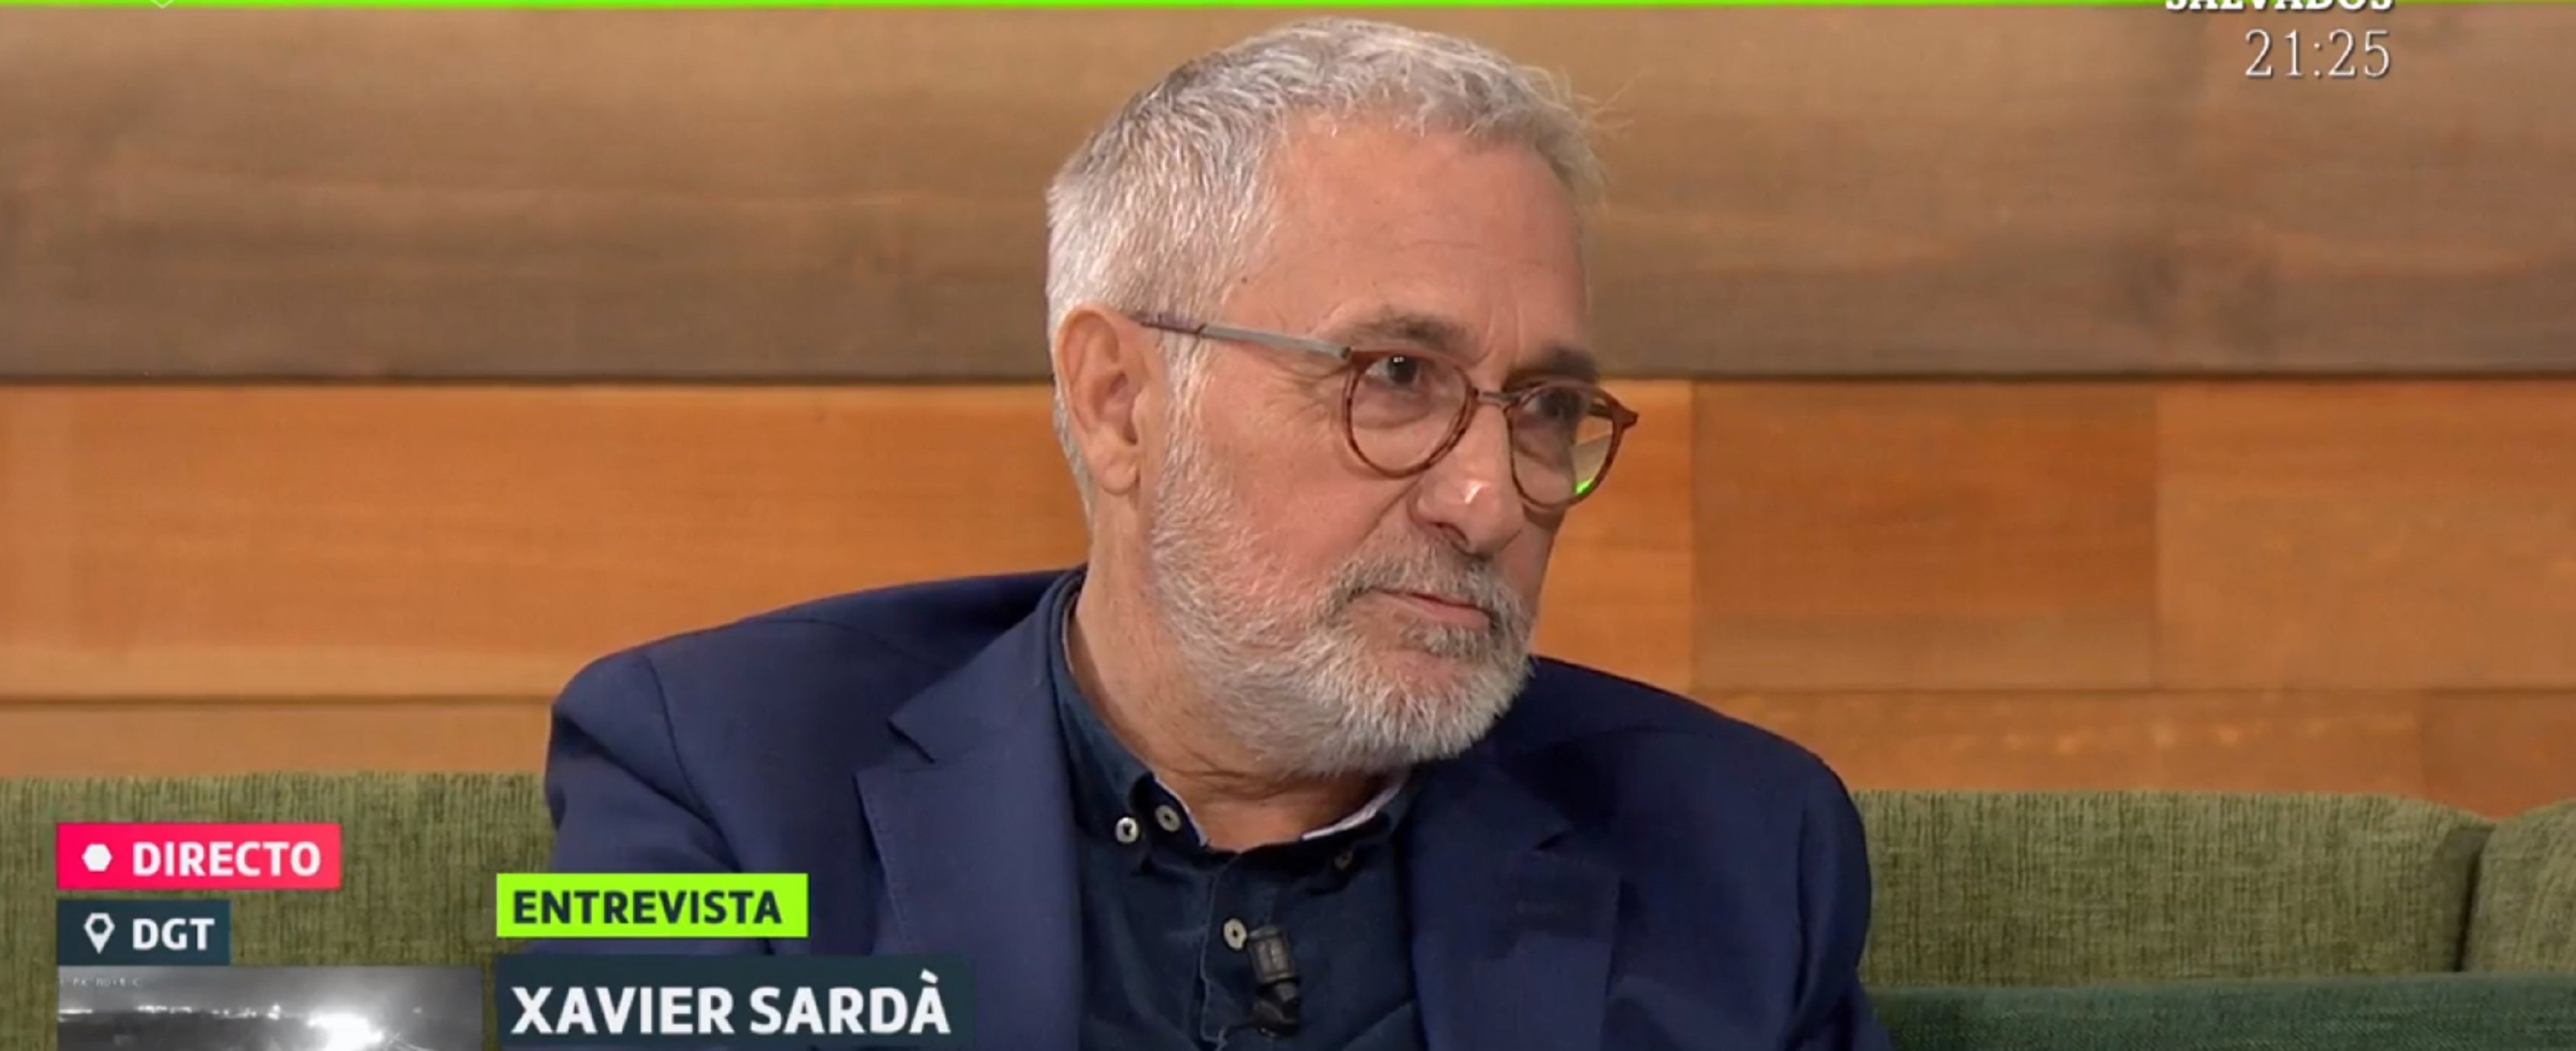 Xavier Sardà en La Sexta: "Los no indepes malvivimos junto a los frustrados"